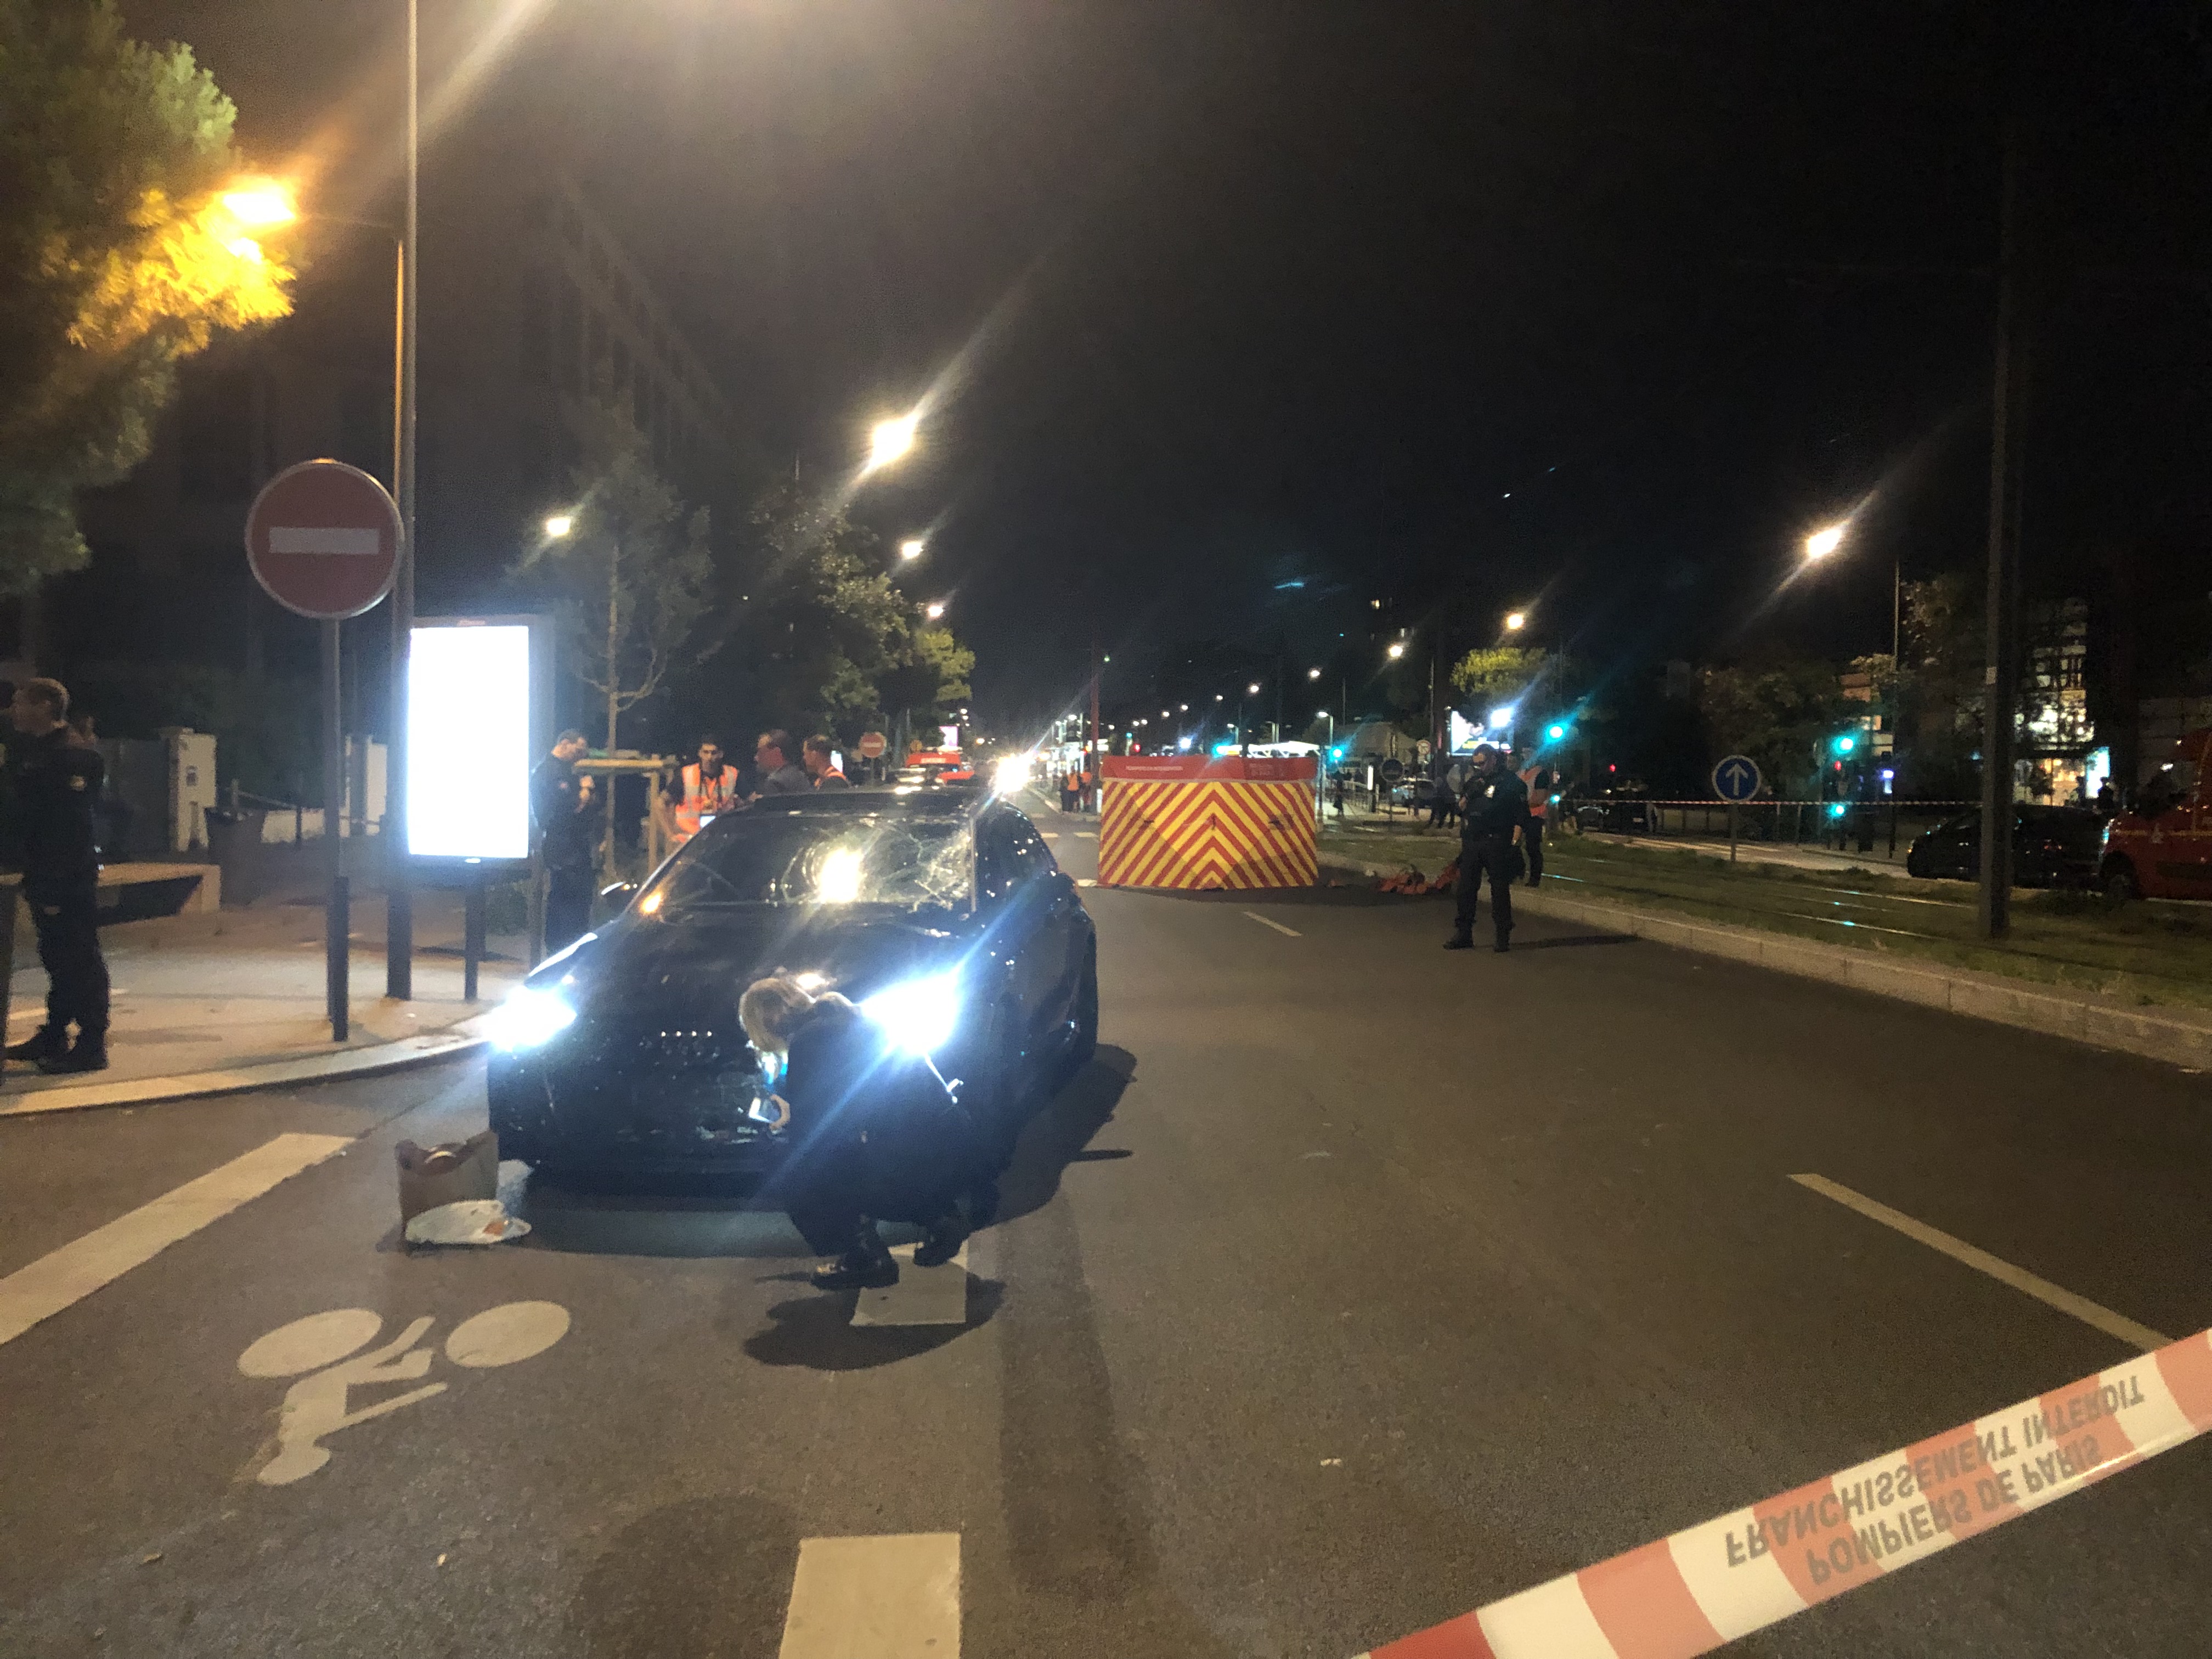 La police examinait le véhicule ce vendredi soir vers 22h à Villejuif.